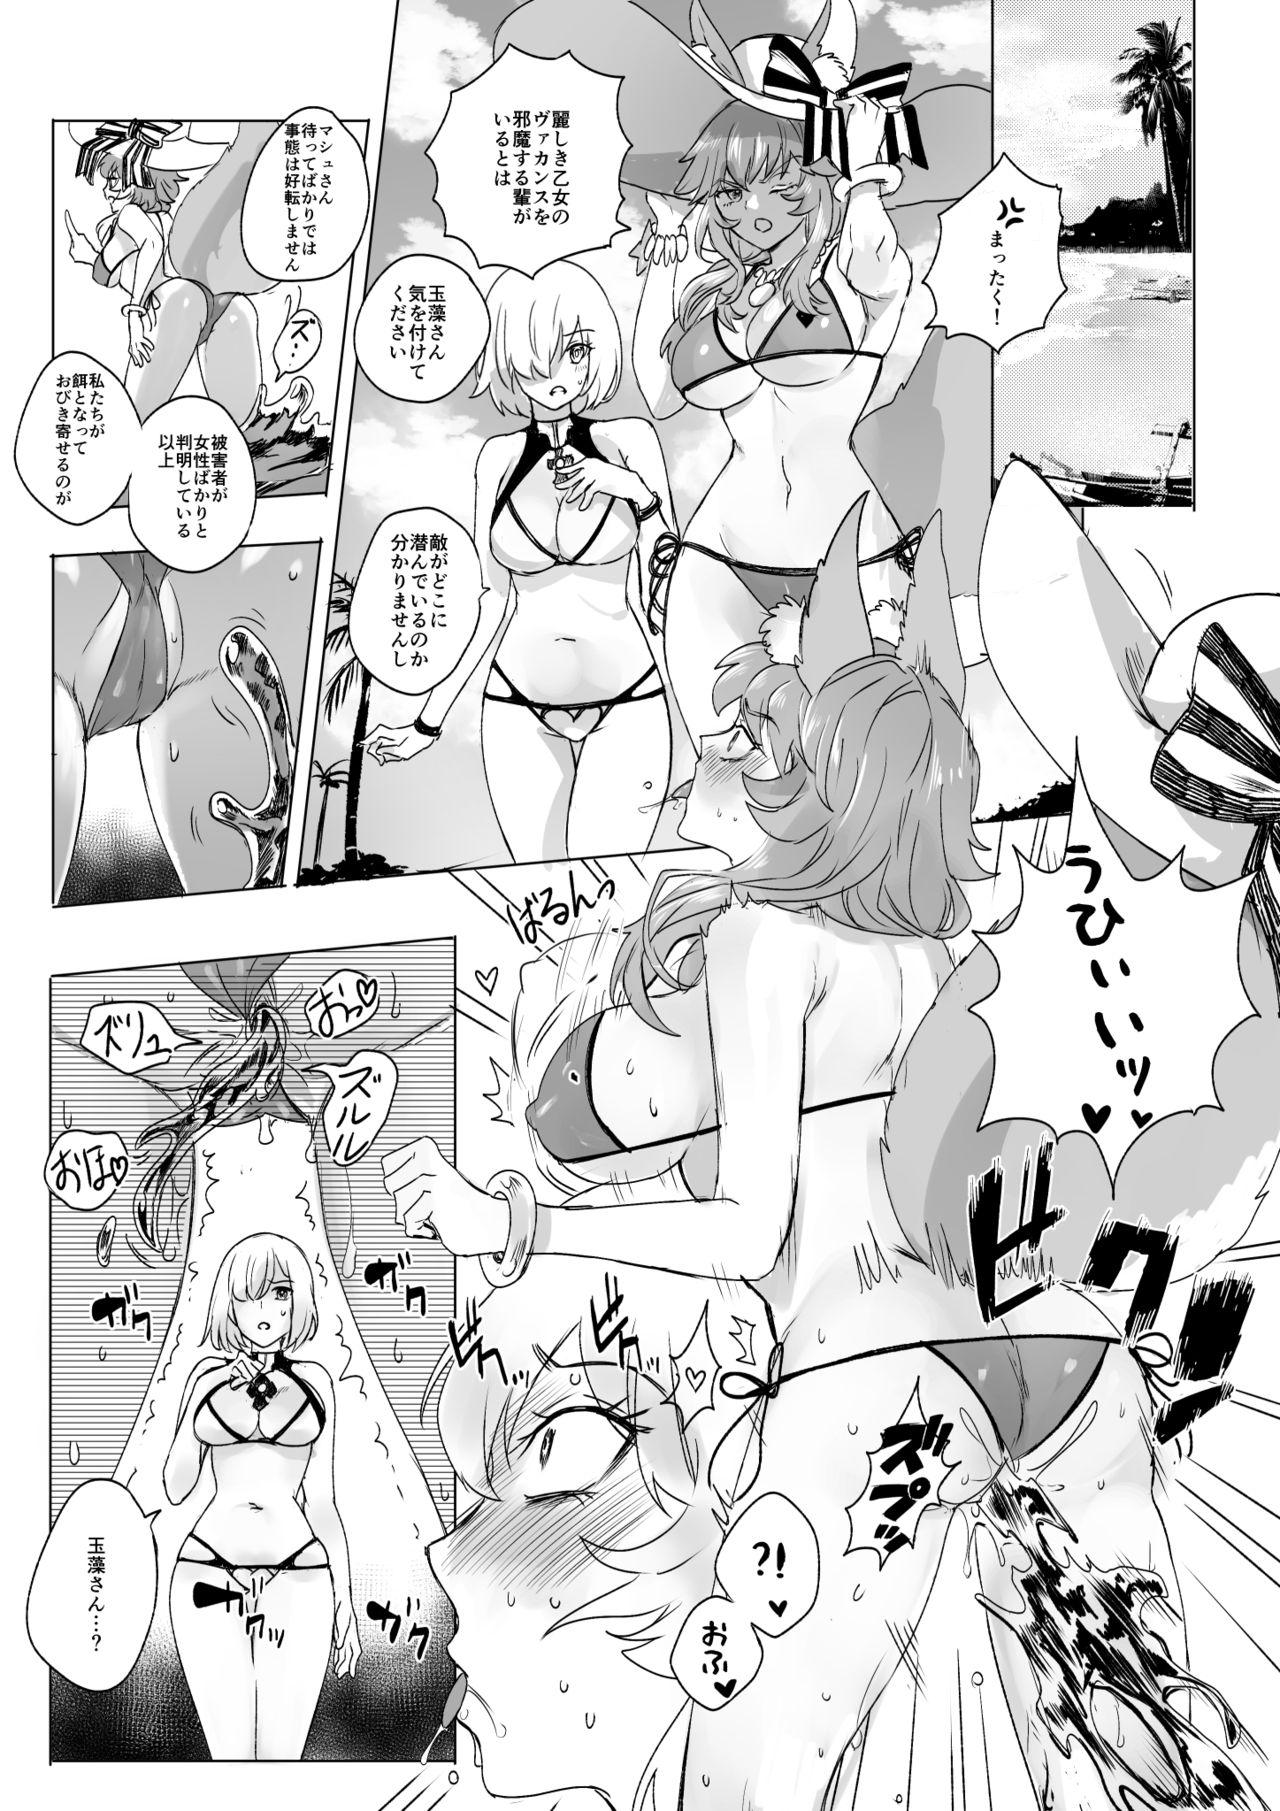 Spread fgoフルカラー漫画 - Fate grand order Gay Sex - Page 7